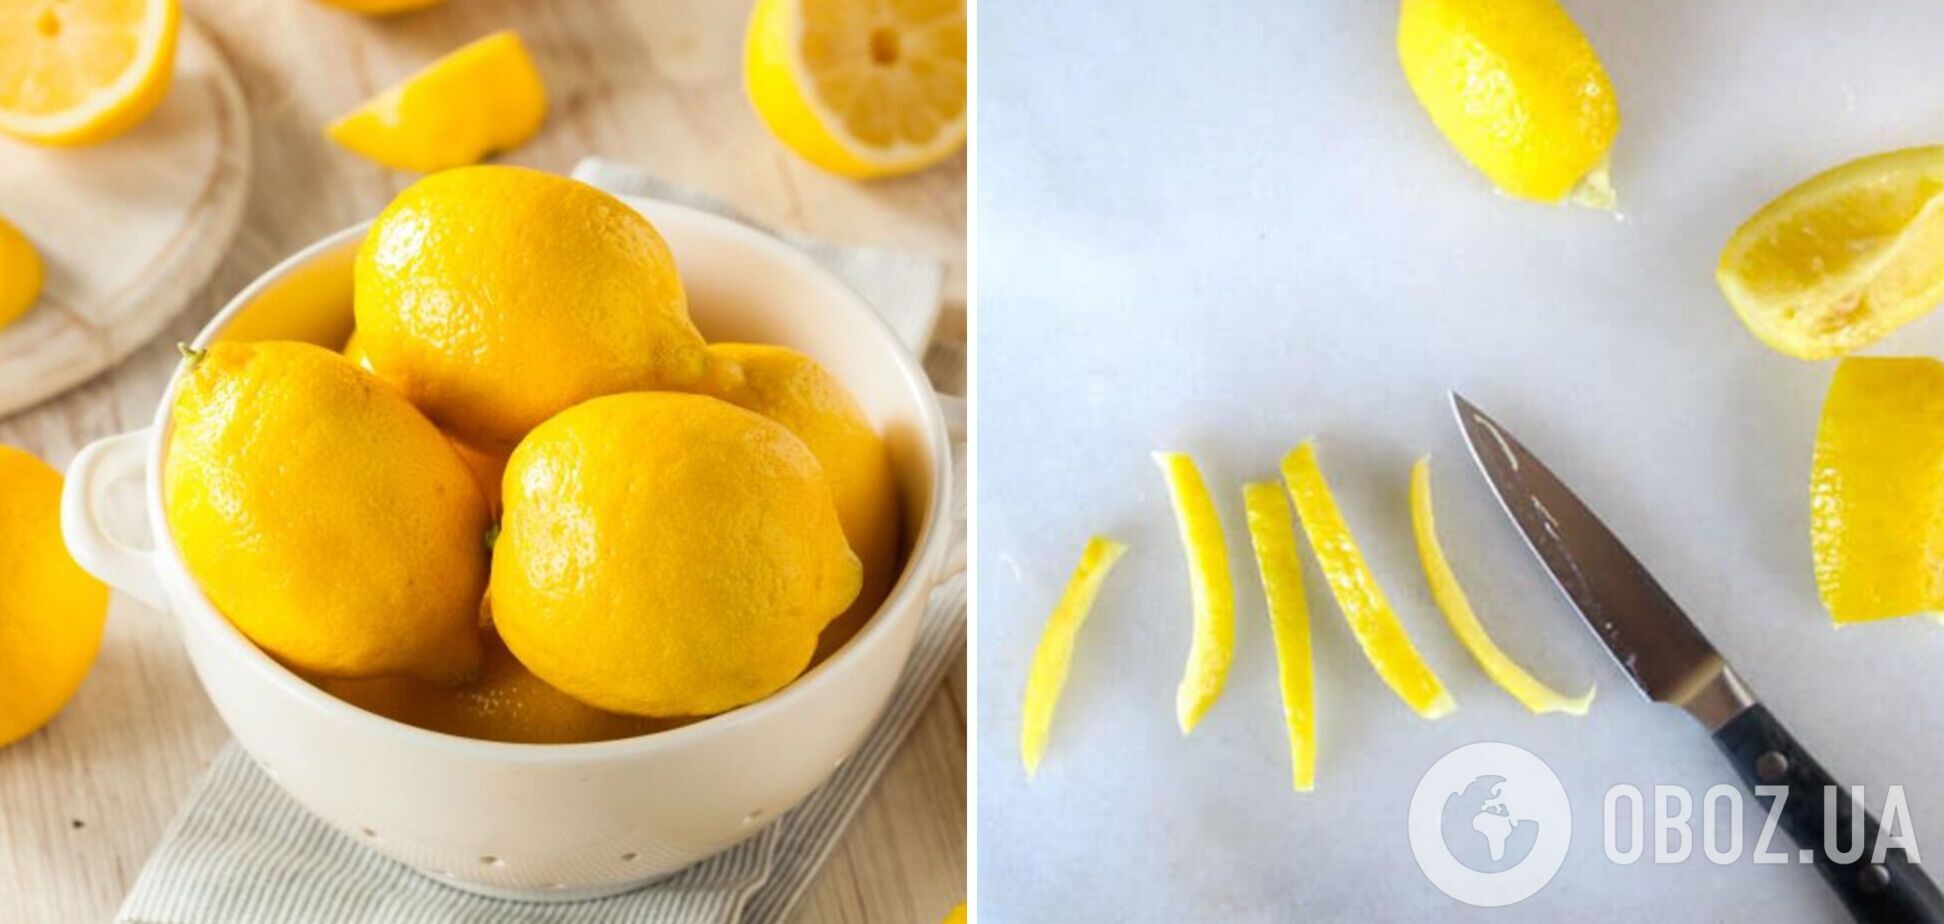 Як можна використати шкірку лимона: декілька простих способів